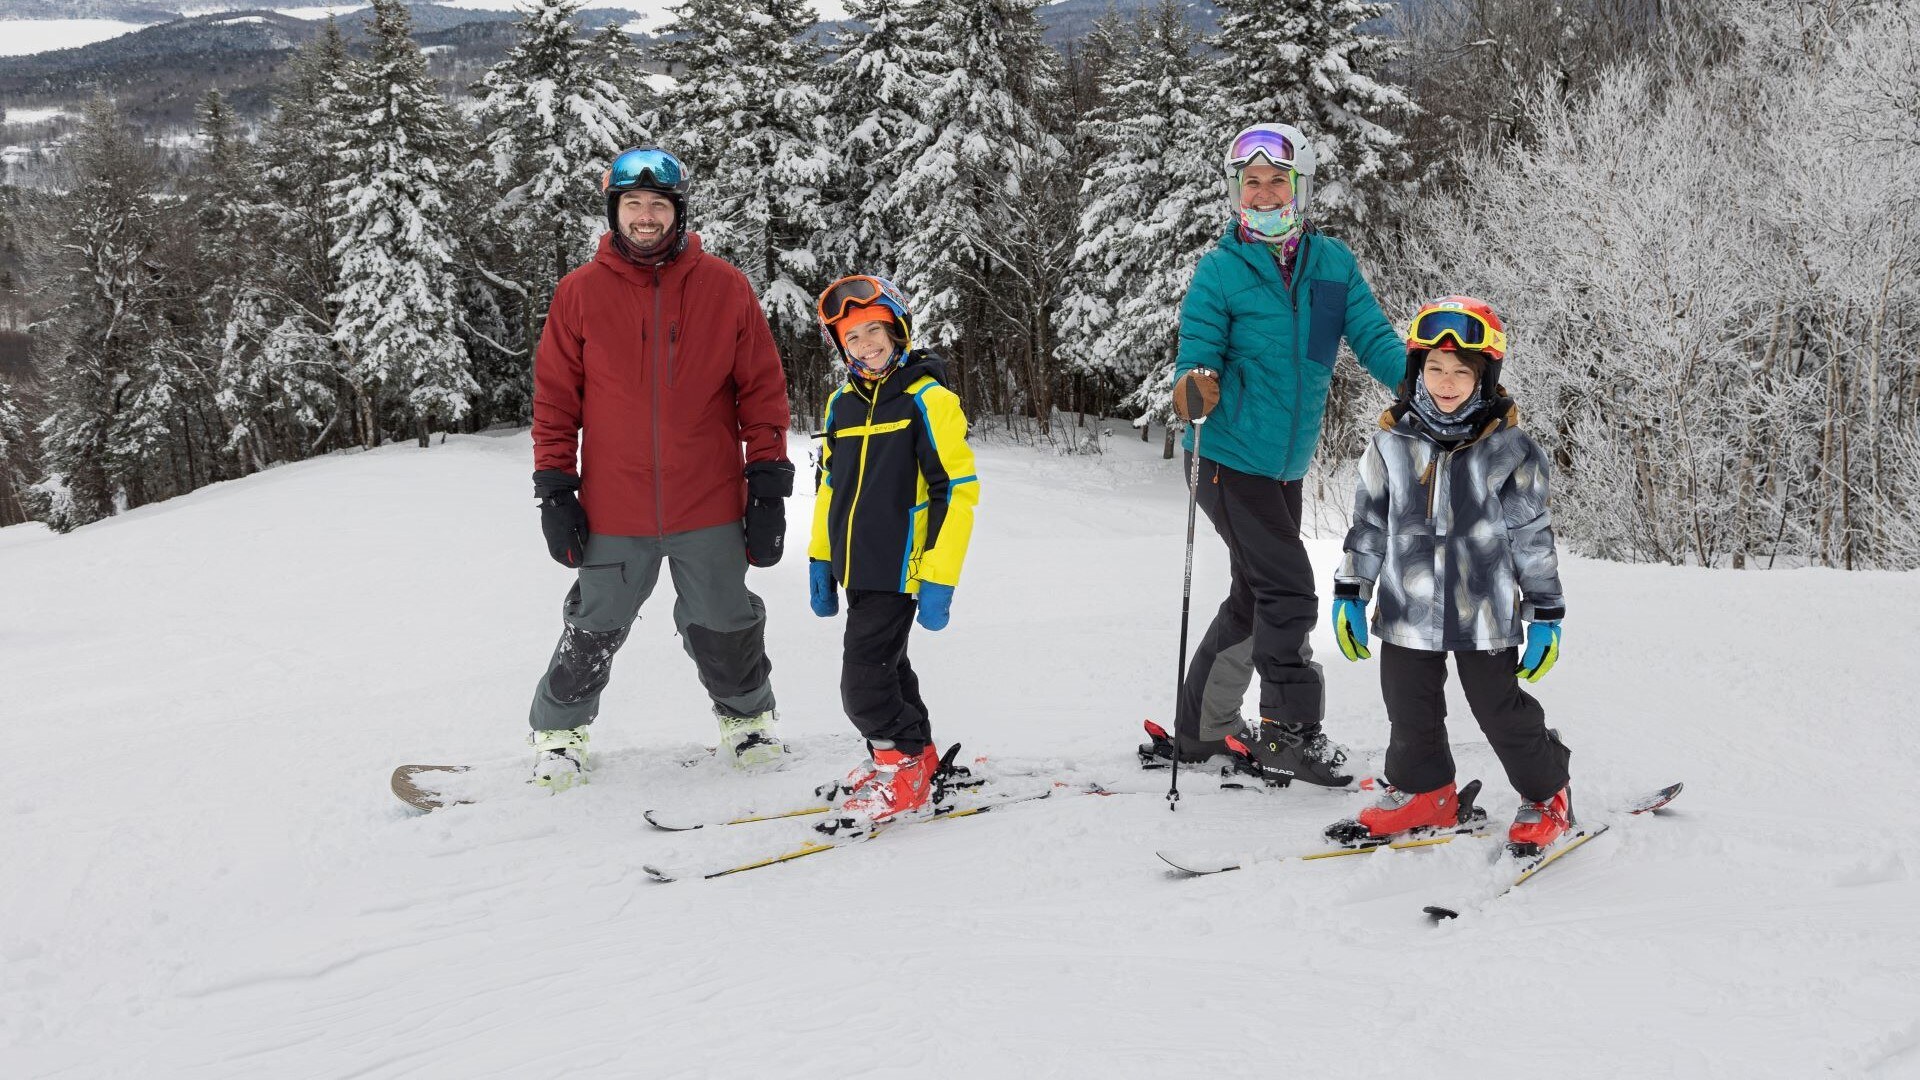 A family skiing at Gunstock